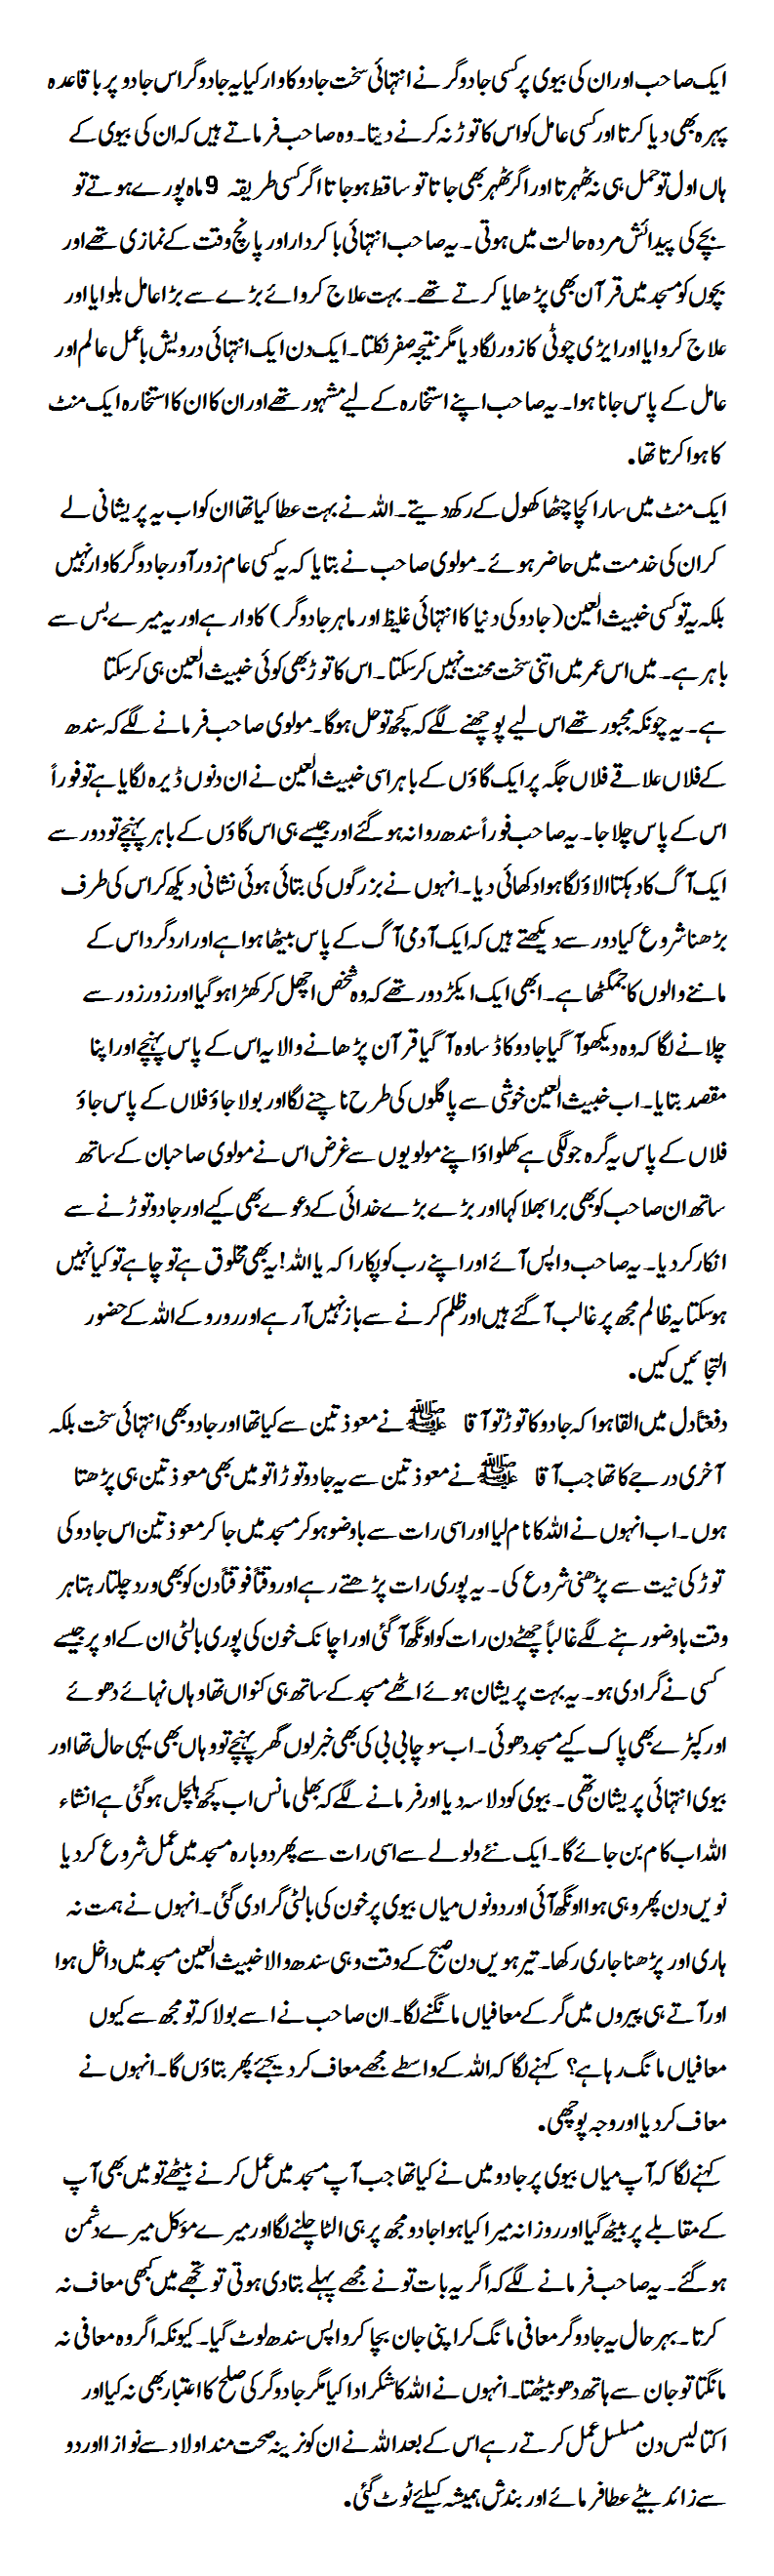 Miracle of the Holy Quran In Urdu